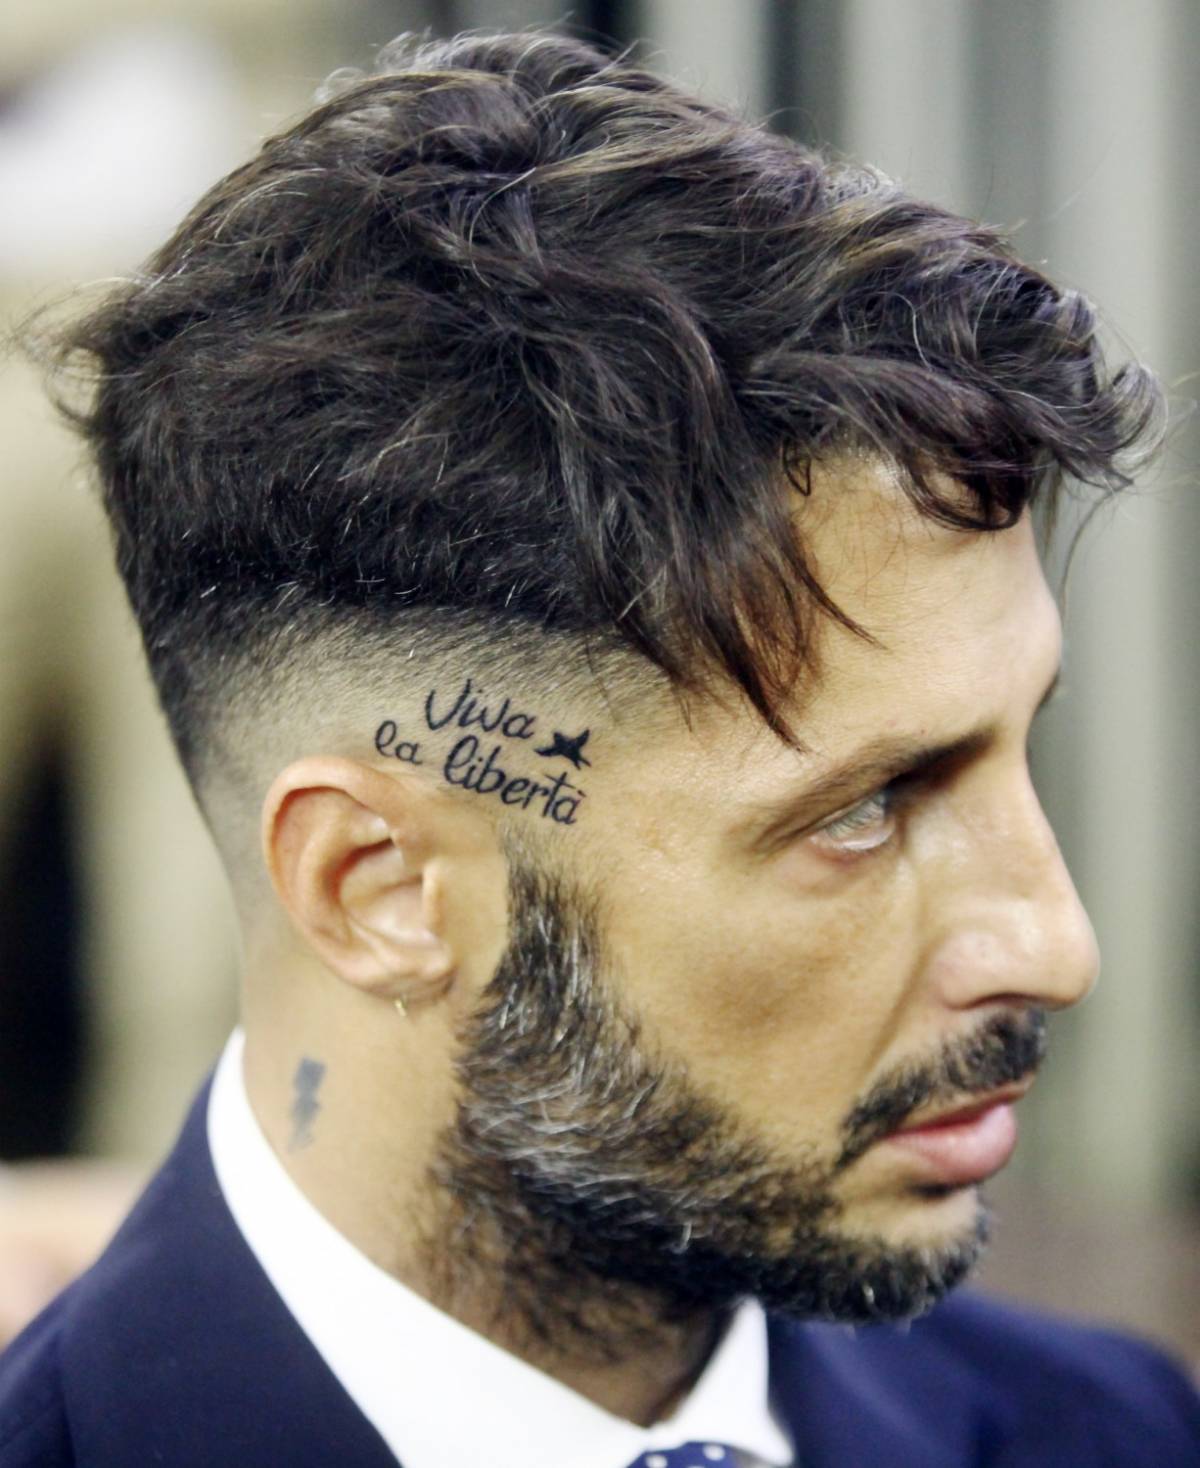 Fabrizio Corona si presenta in Tribunale con un tatuaggio di sfida ai giudici